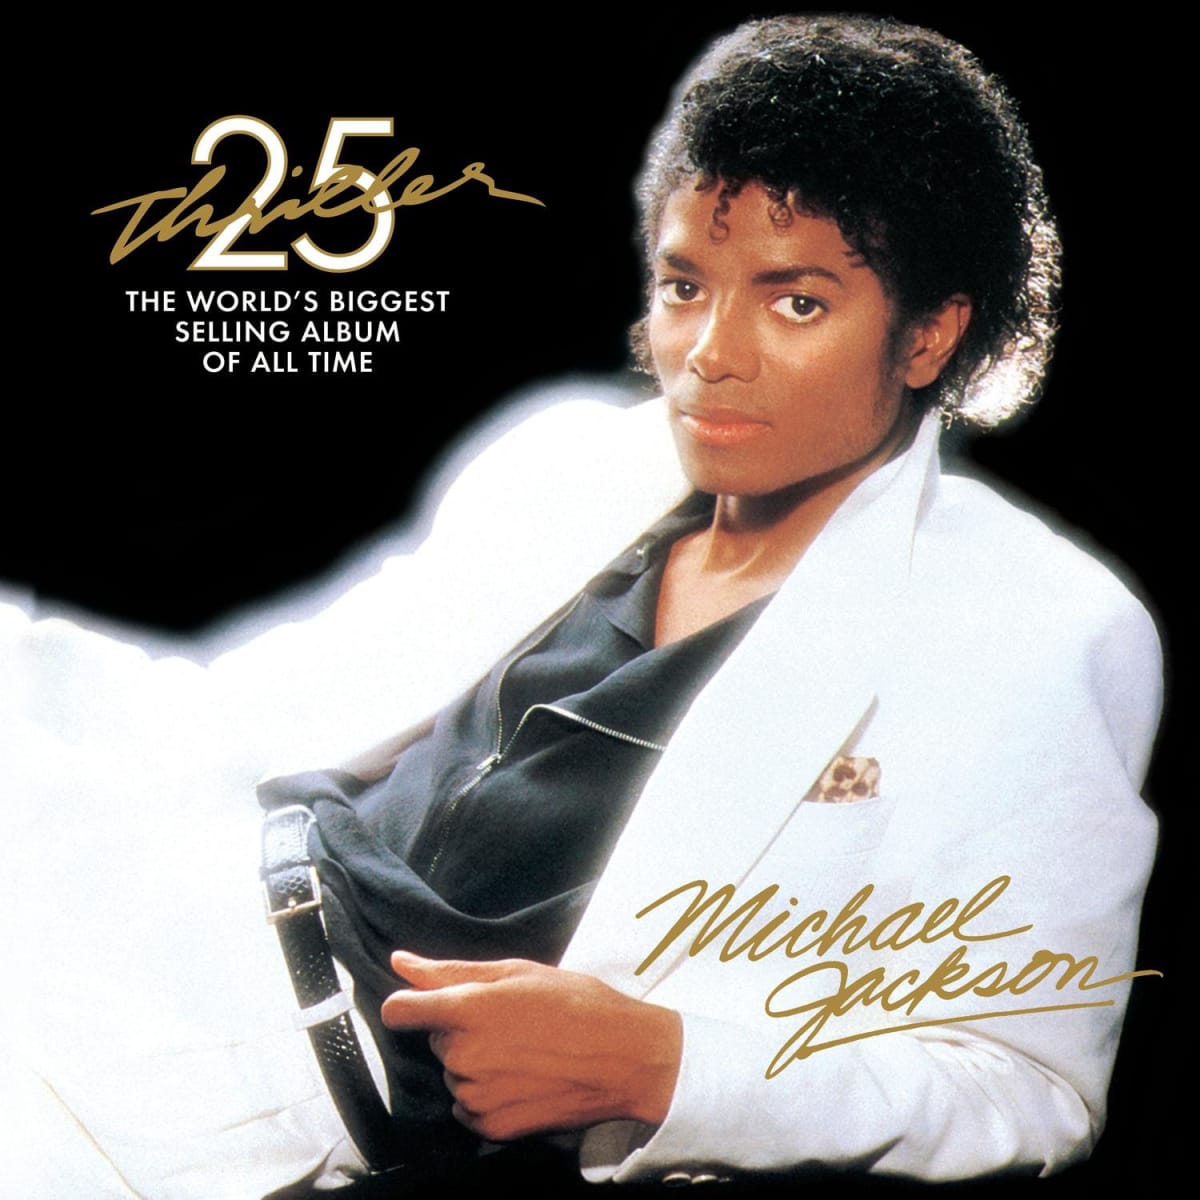 Song Beat It je součástí nejprodávanějšího alba všech dob Thriller.